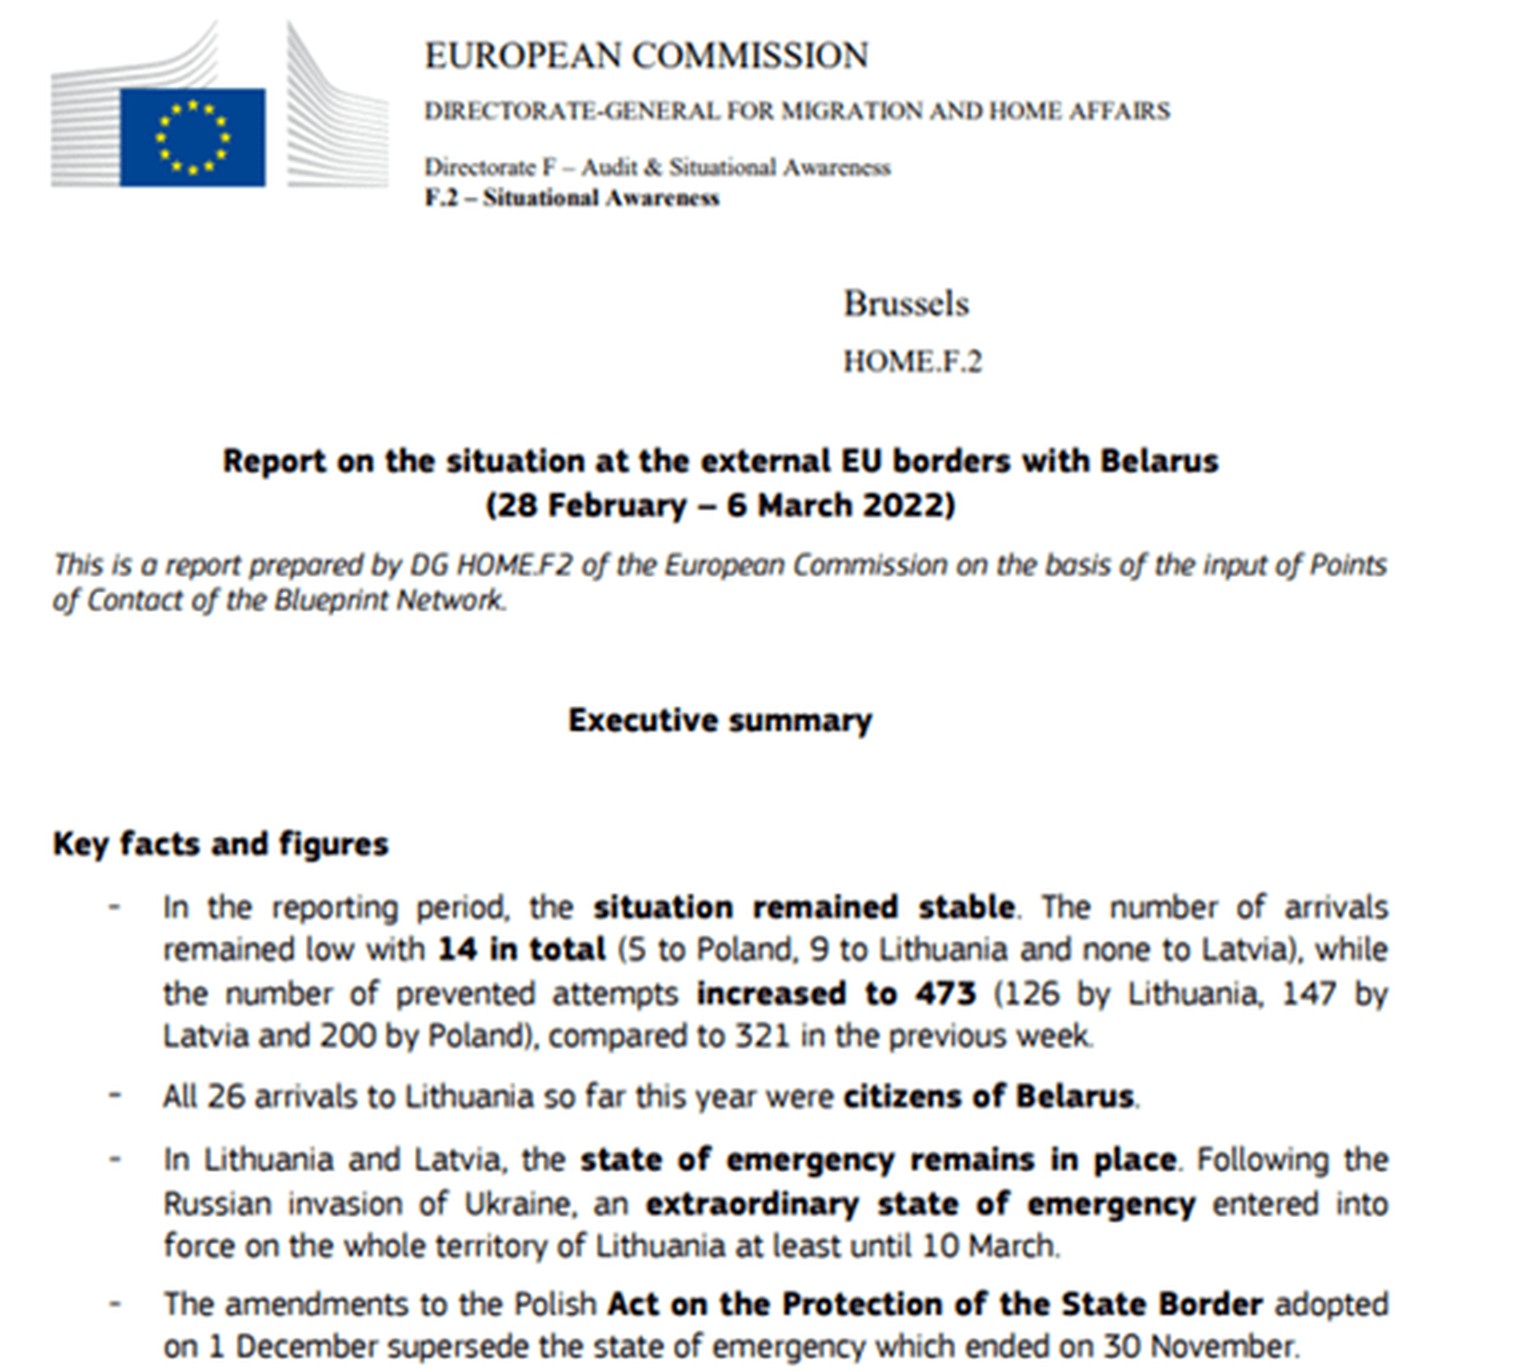 Le document prétendument officiel de la Commission européenne utilisé par les pirates pour le phishing.